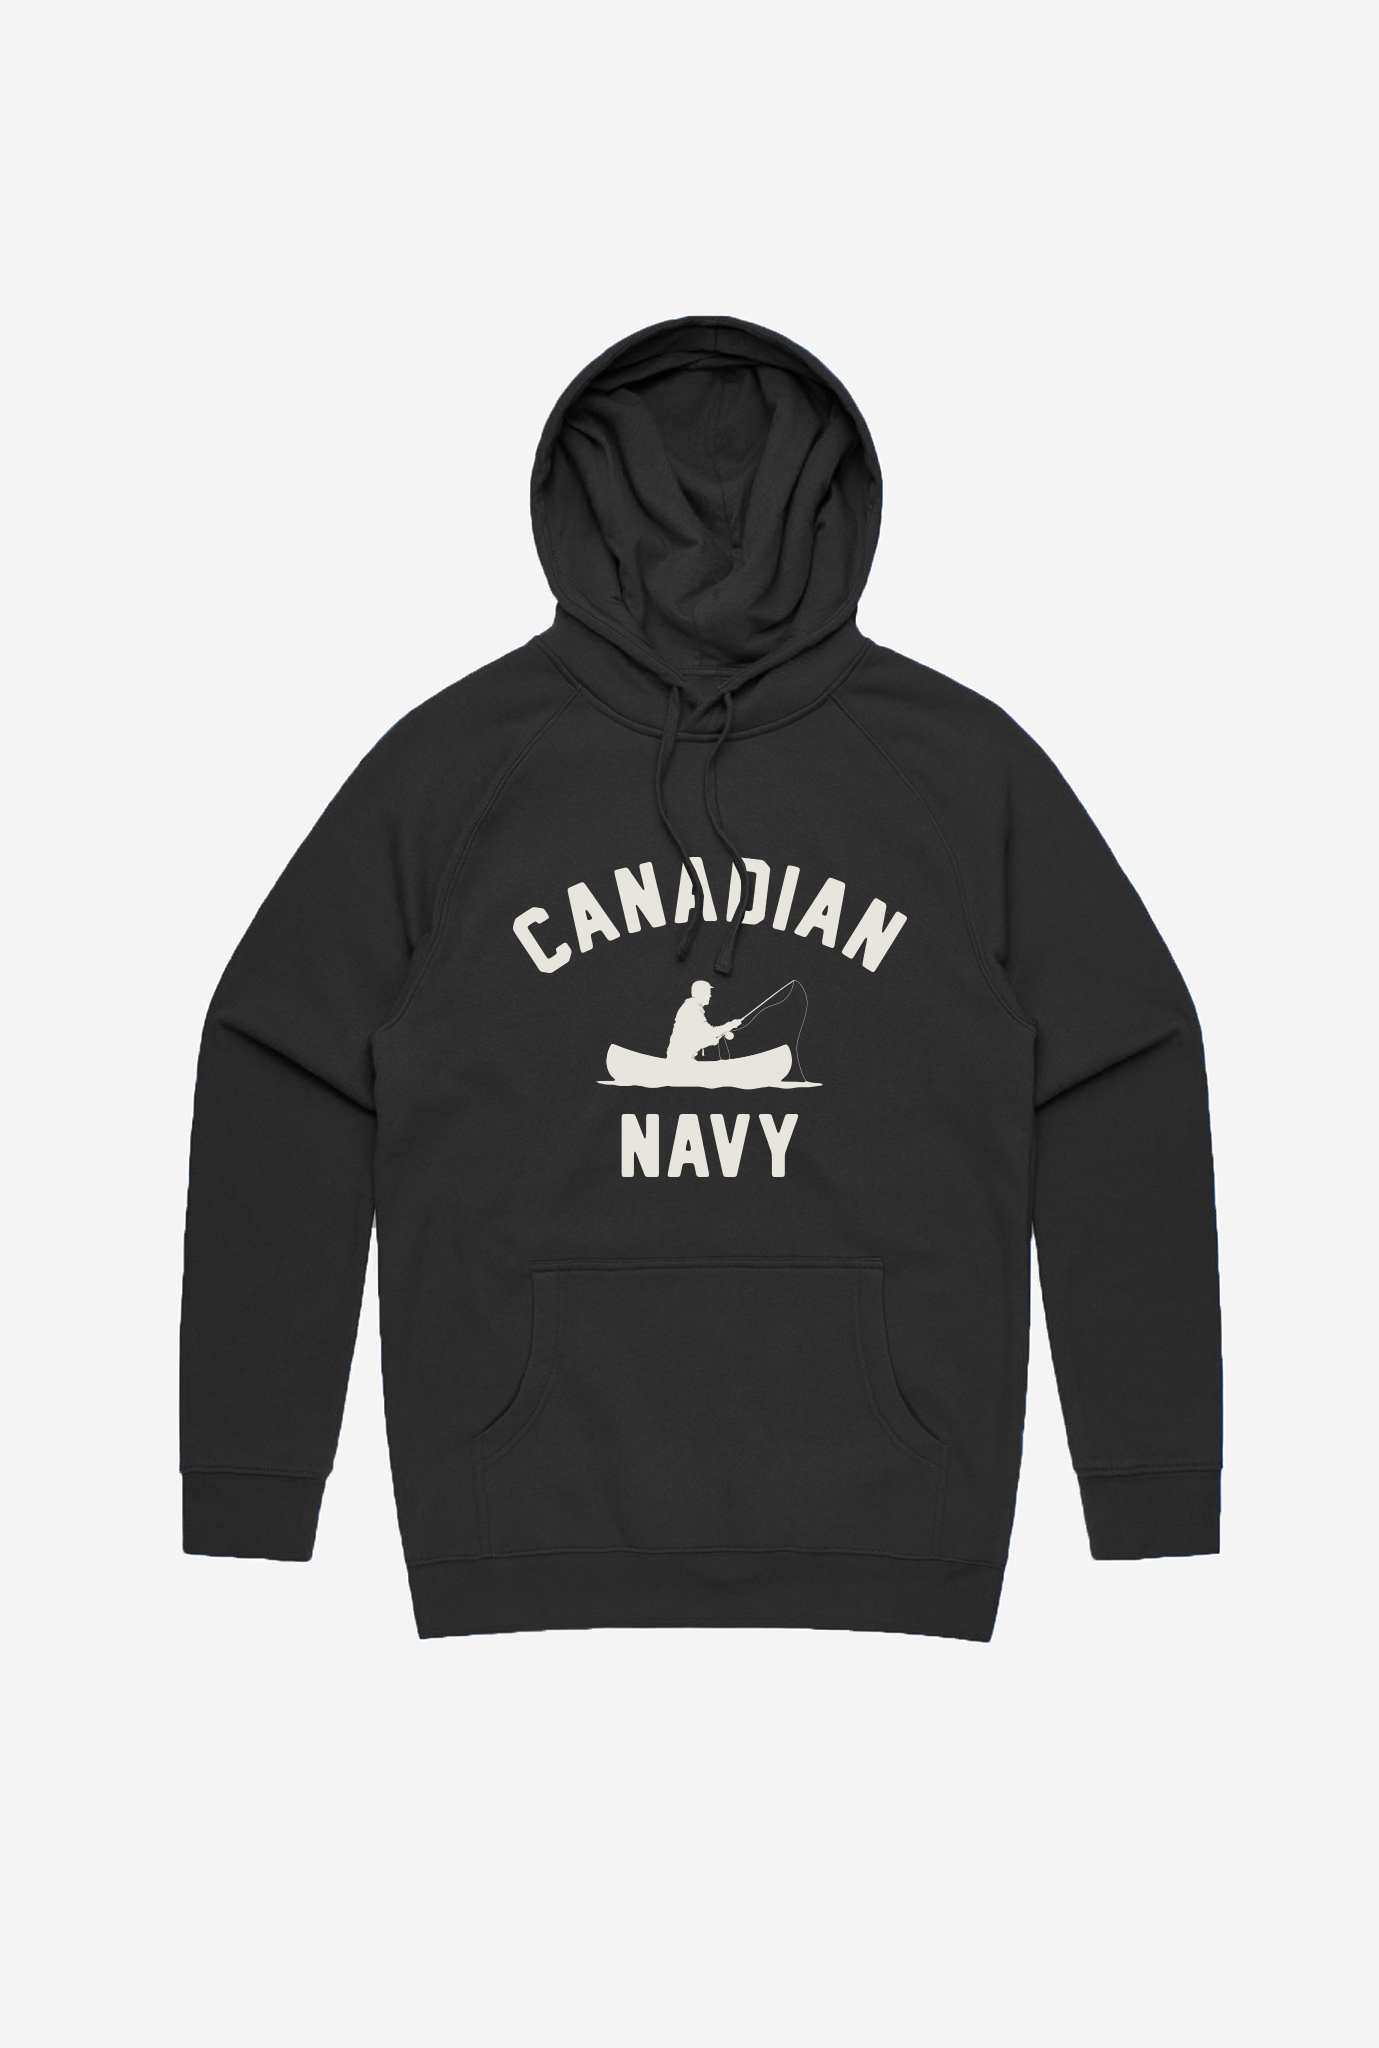 Canadian Navy Hoodie - Black